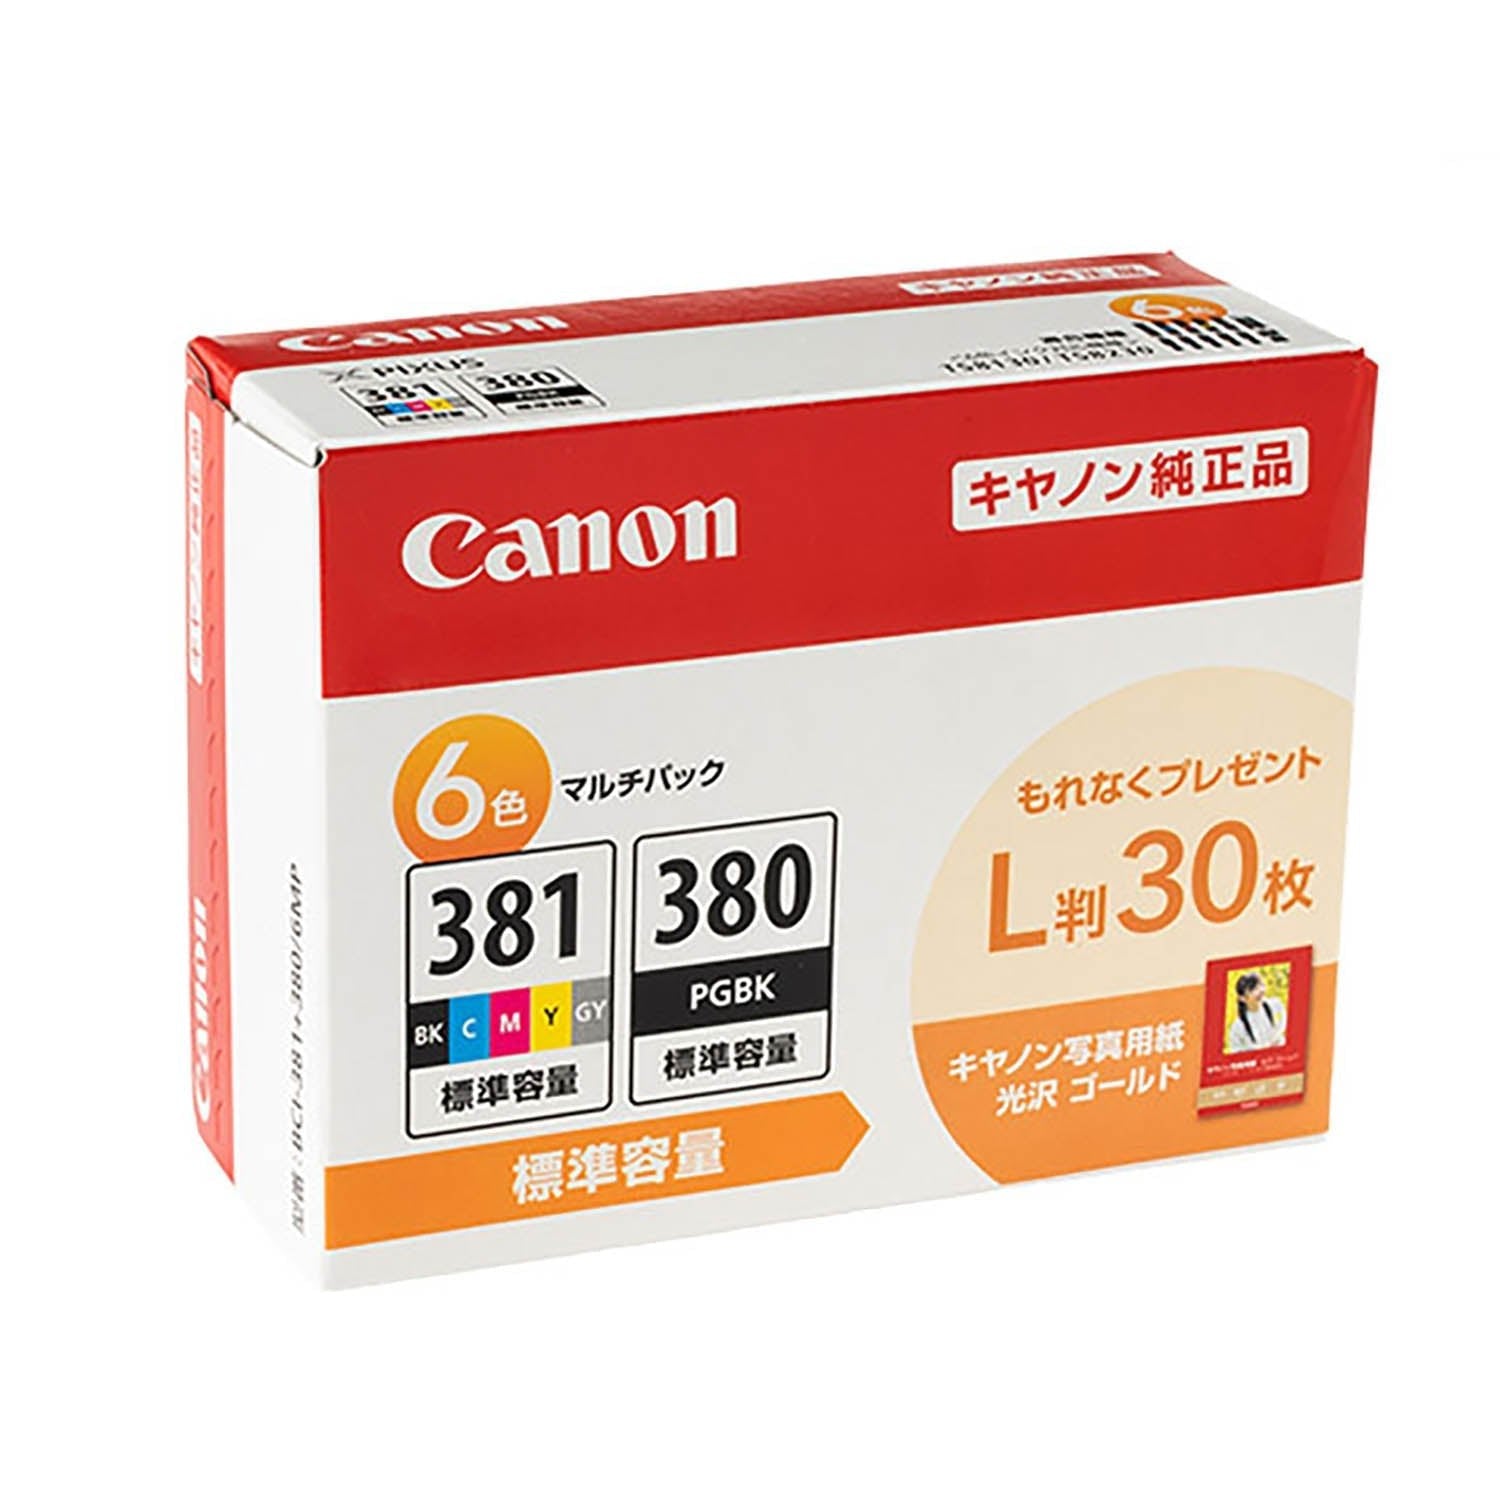 キヤノン用 BCI-381+380/6MP 純正インク 6色セット